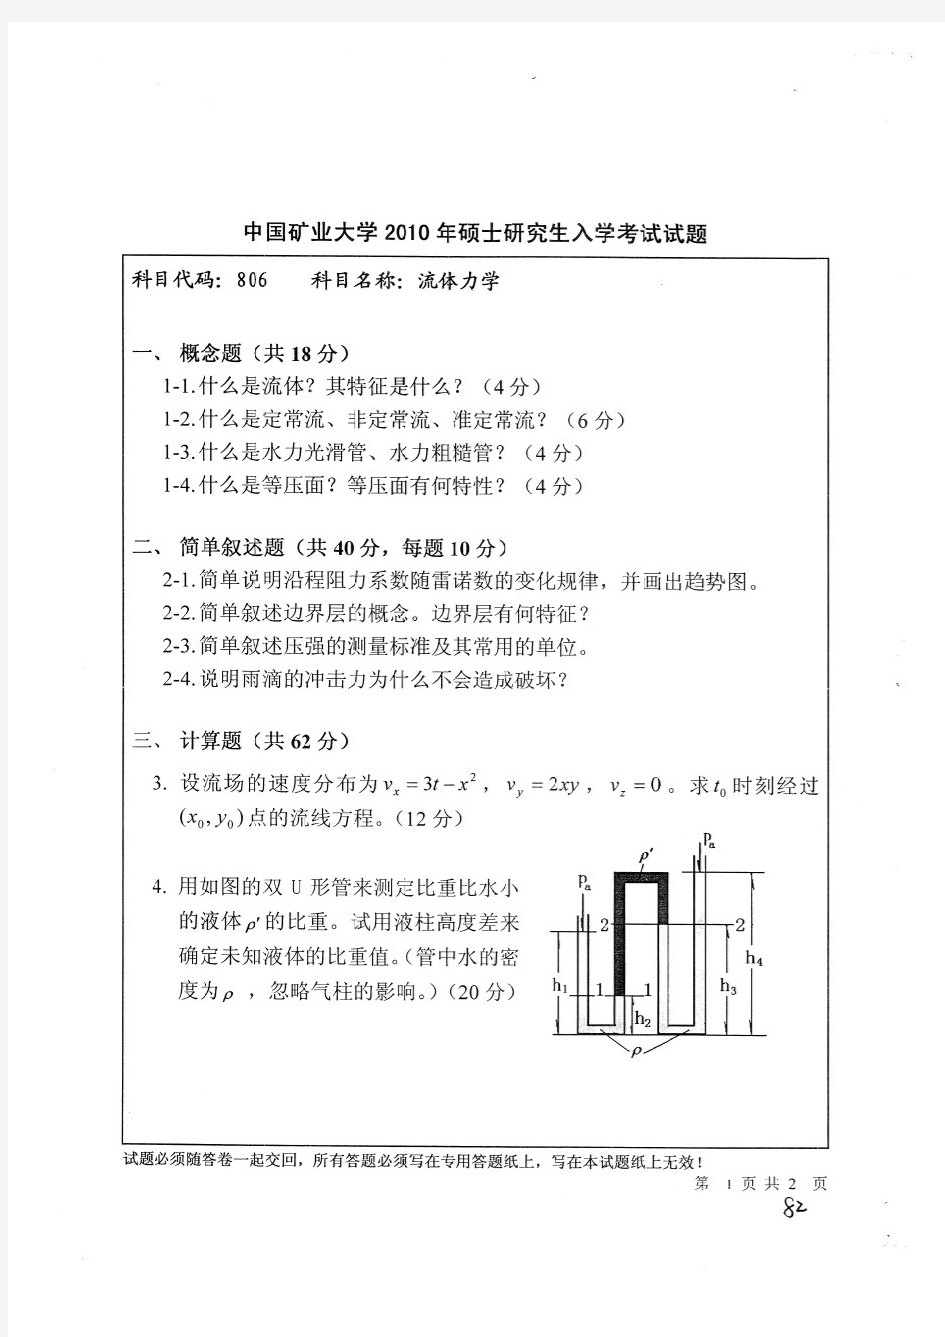 中国矿业大学(徐州)806流体力学考研真题(10--13年)